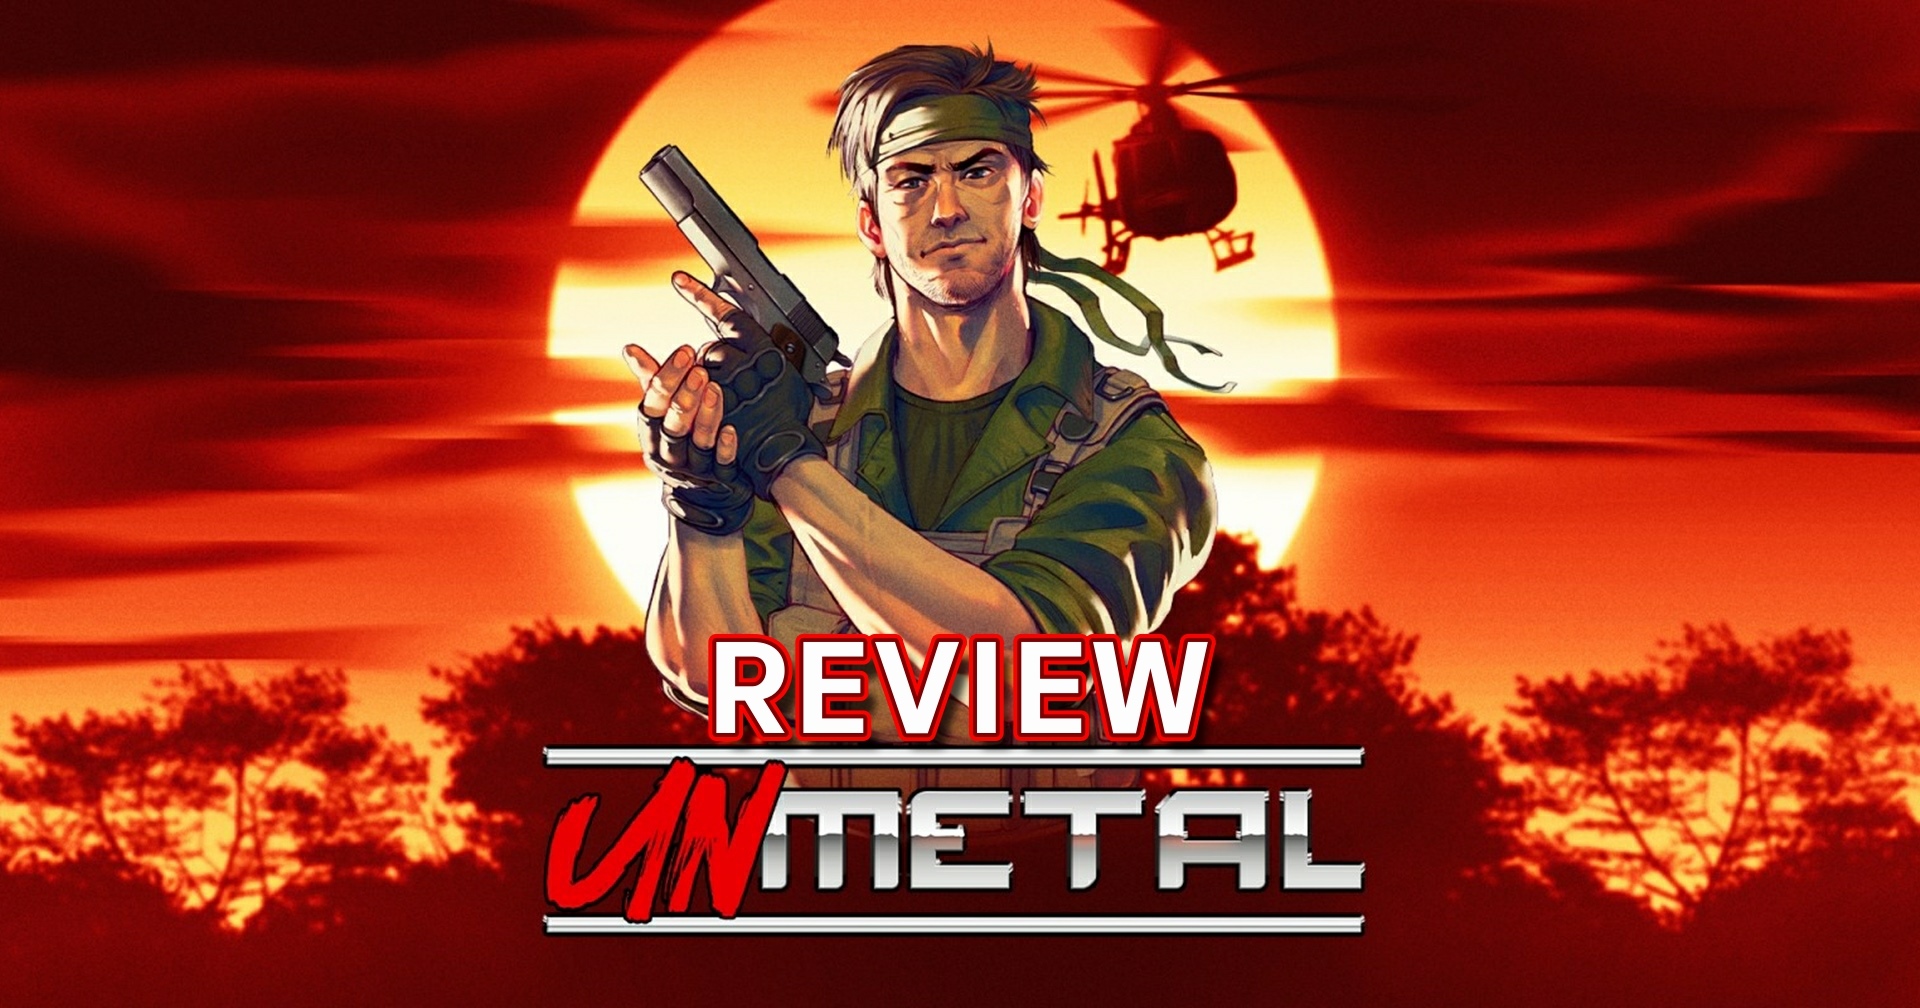 รีวิวเกม UnMetal เกมสายลับล้อเลียน Metal Gear สุดฮาแต่เกมเพลย์ธรรมดา